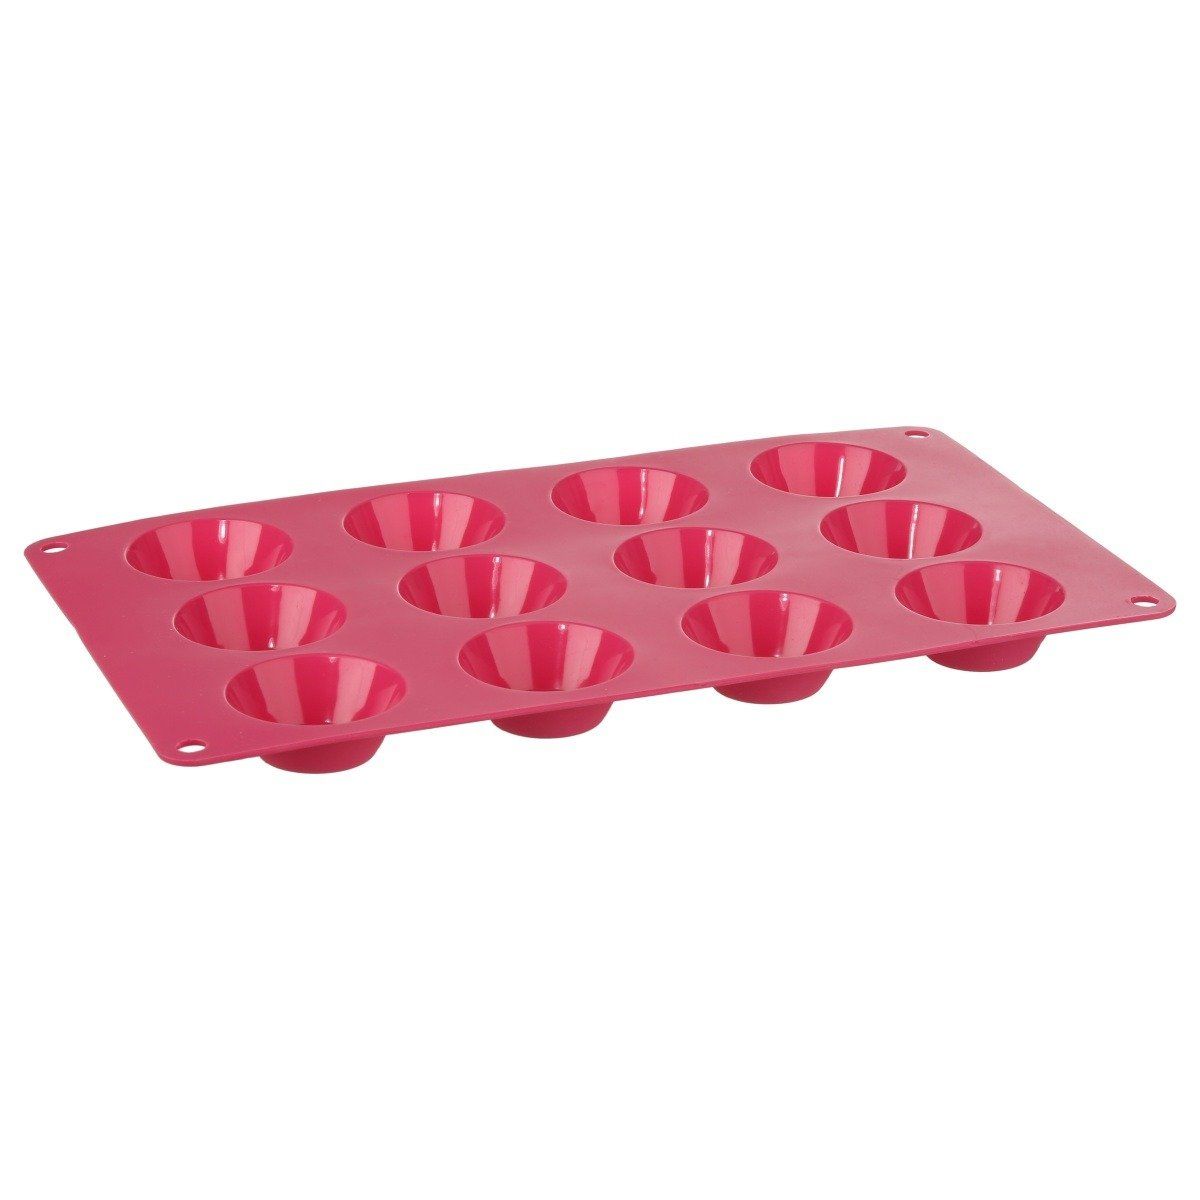 5five Simply Smart Silikonová forma na pečení, 29 x 17 cm, 12 cupcakes, růžová - EMAKO.CZ s.r.o.